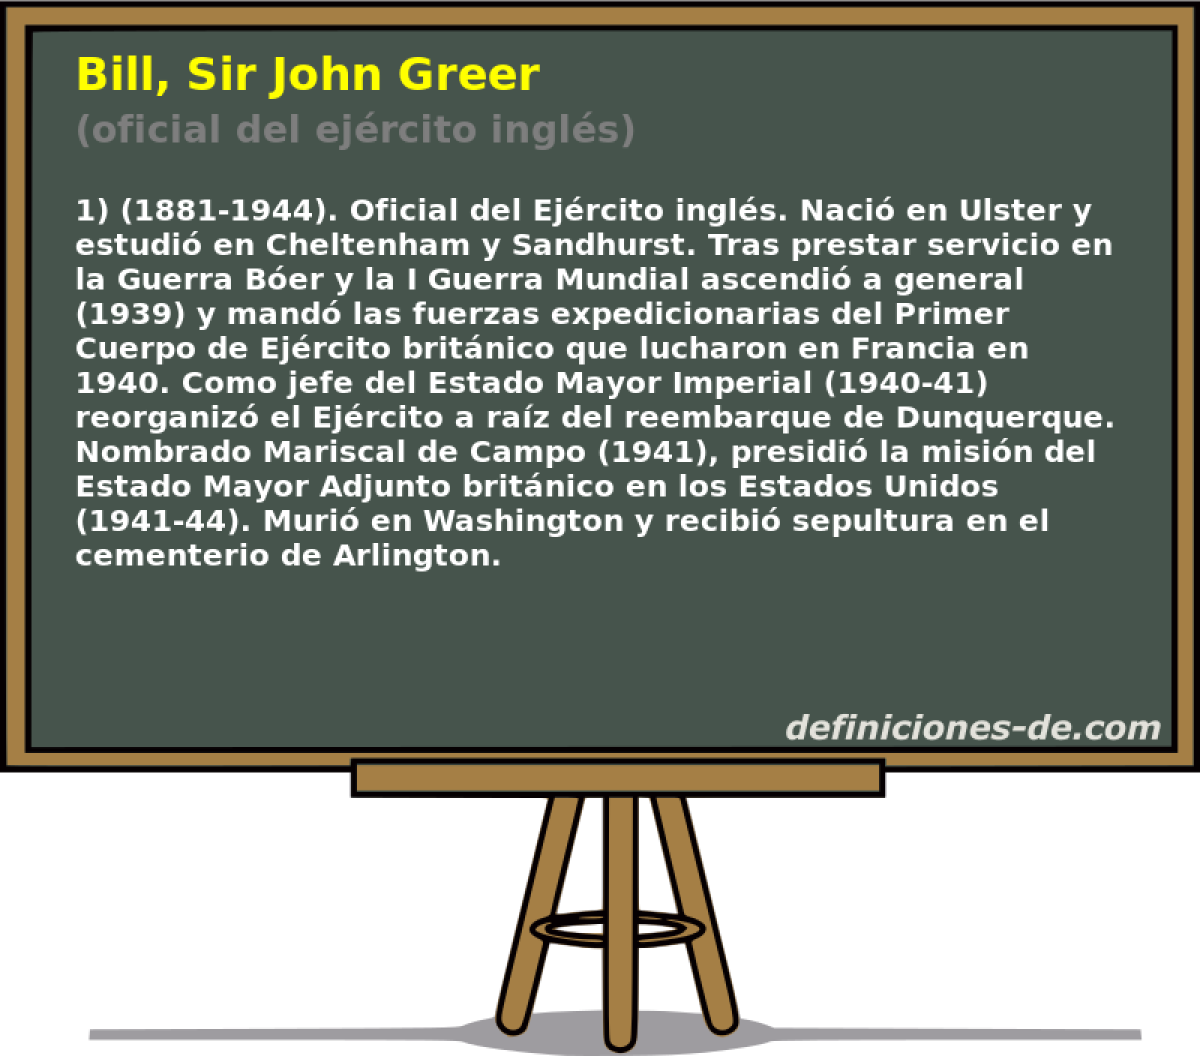 Bill, Sir John Greer (oficial del ejrcito ingls)